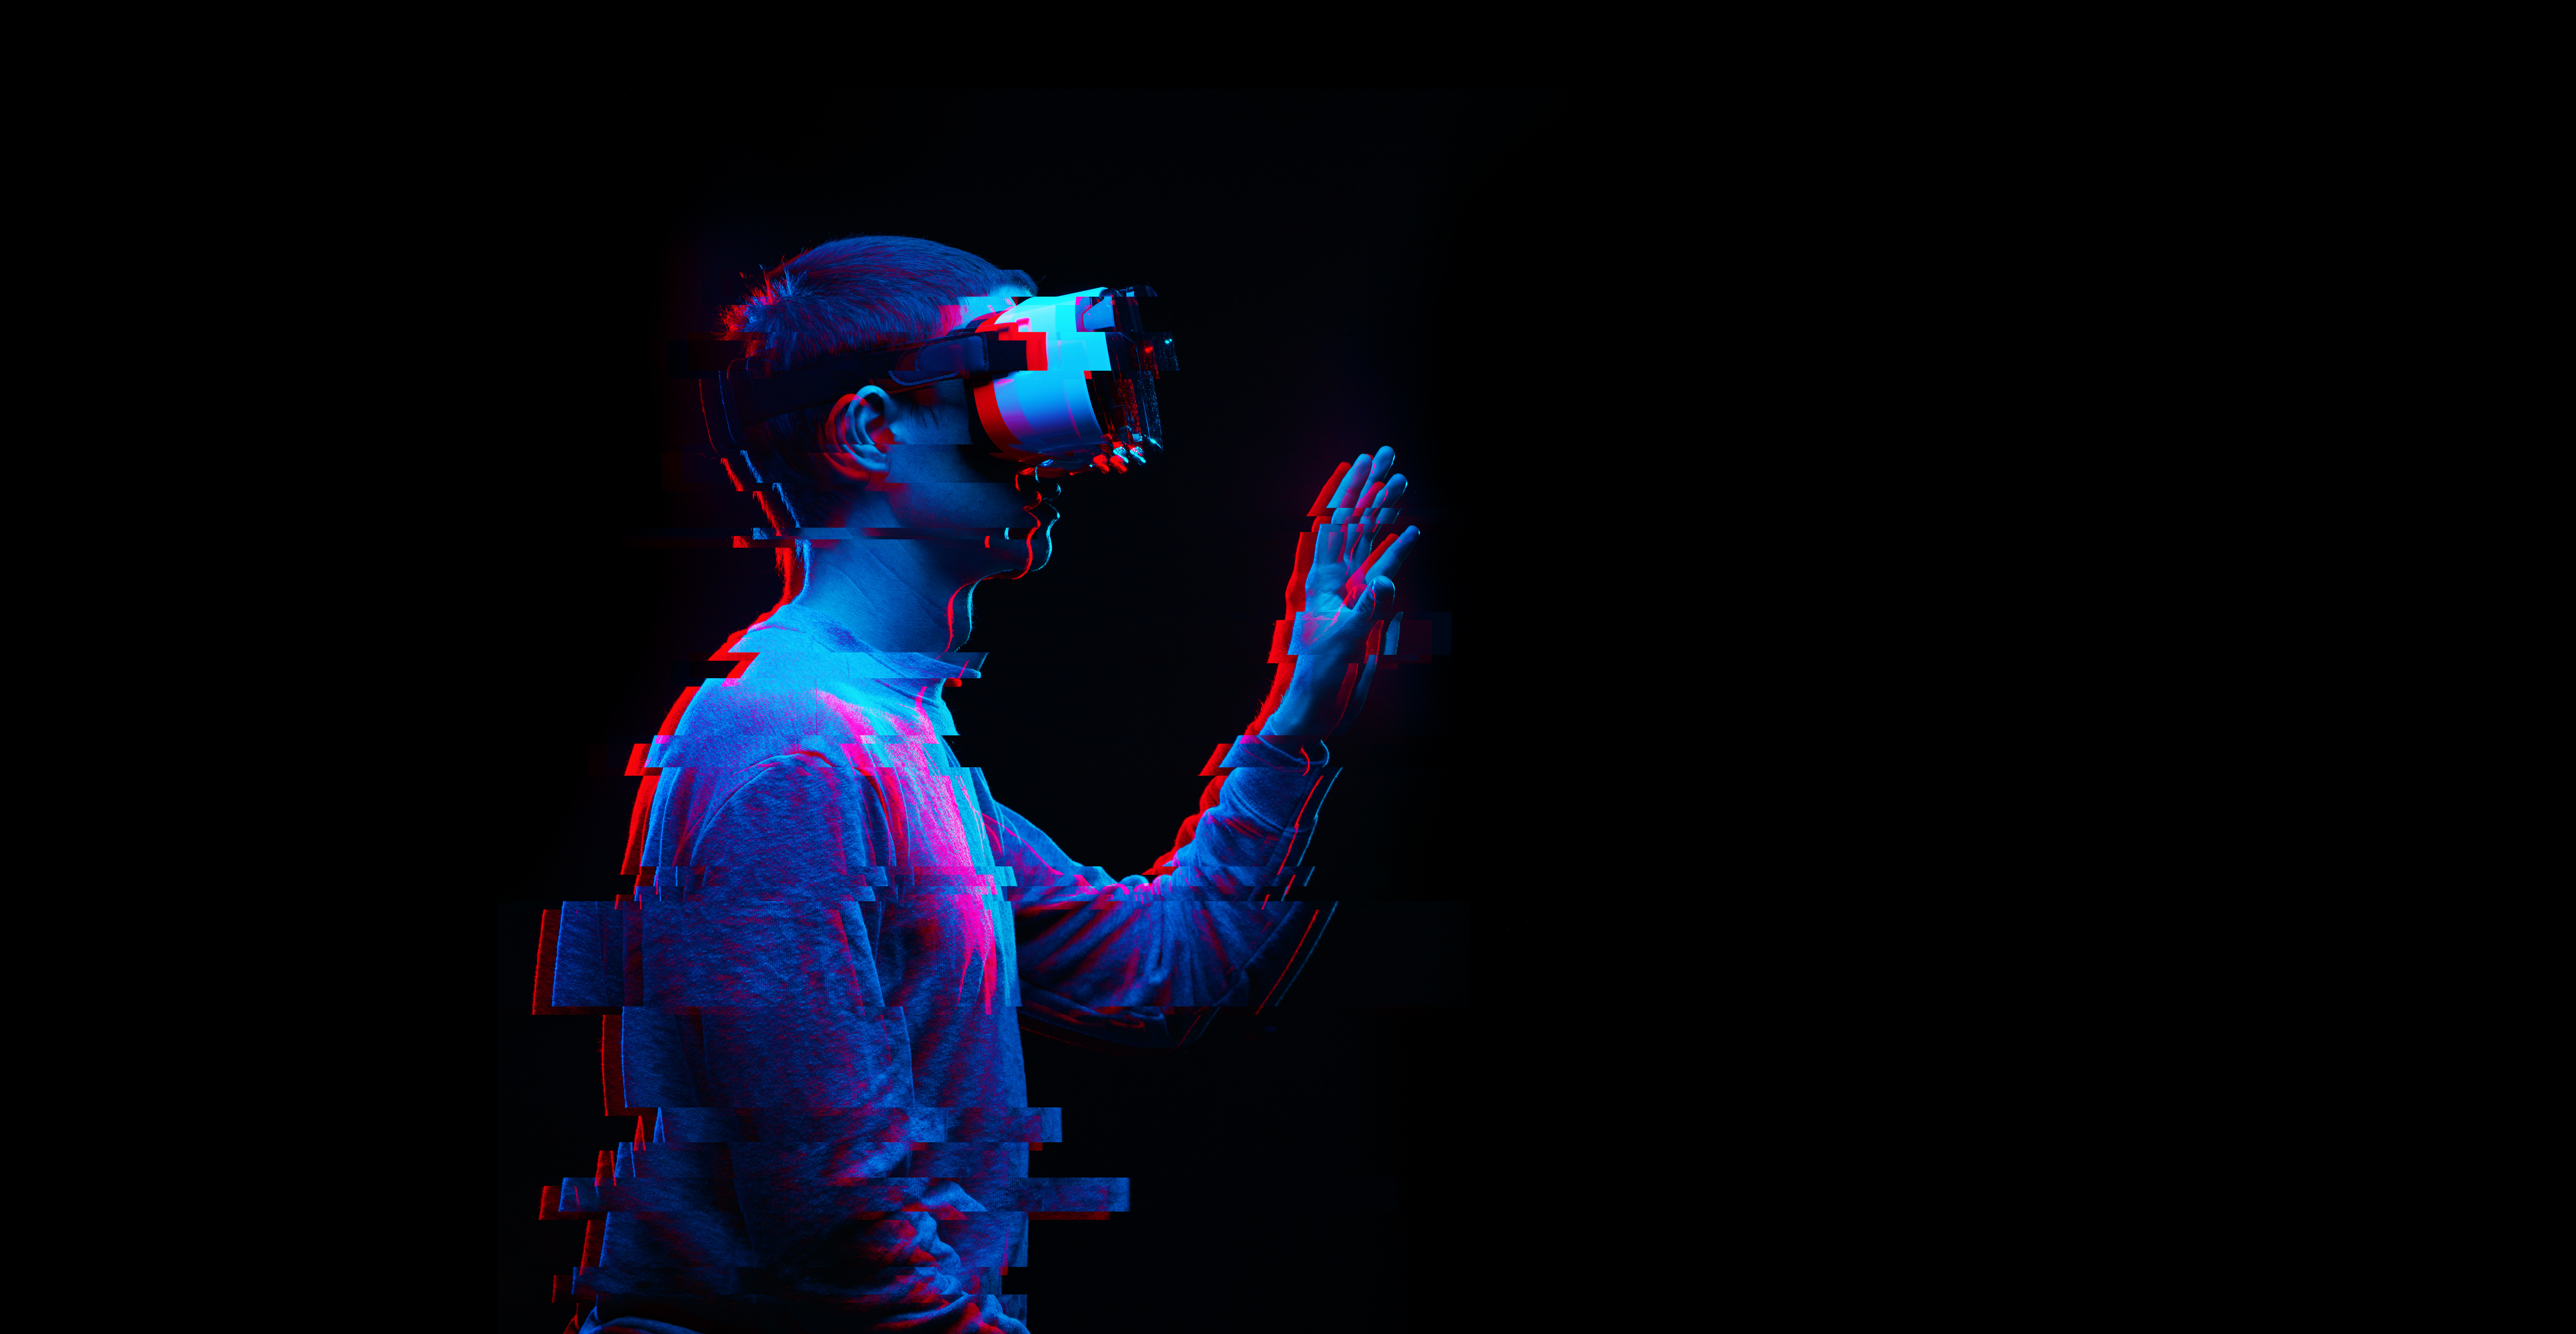 Foto: Ein Mann benutzt ein Virtual-Reality-Brille. Bild mit Glitch-Effekt. © nuclear_lily | stock.adobe.com